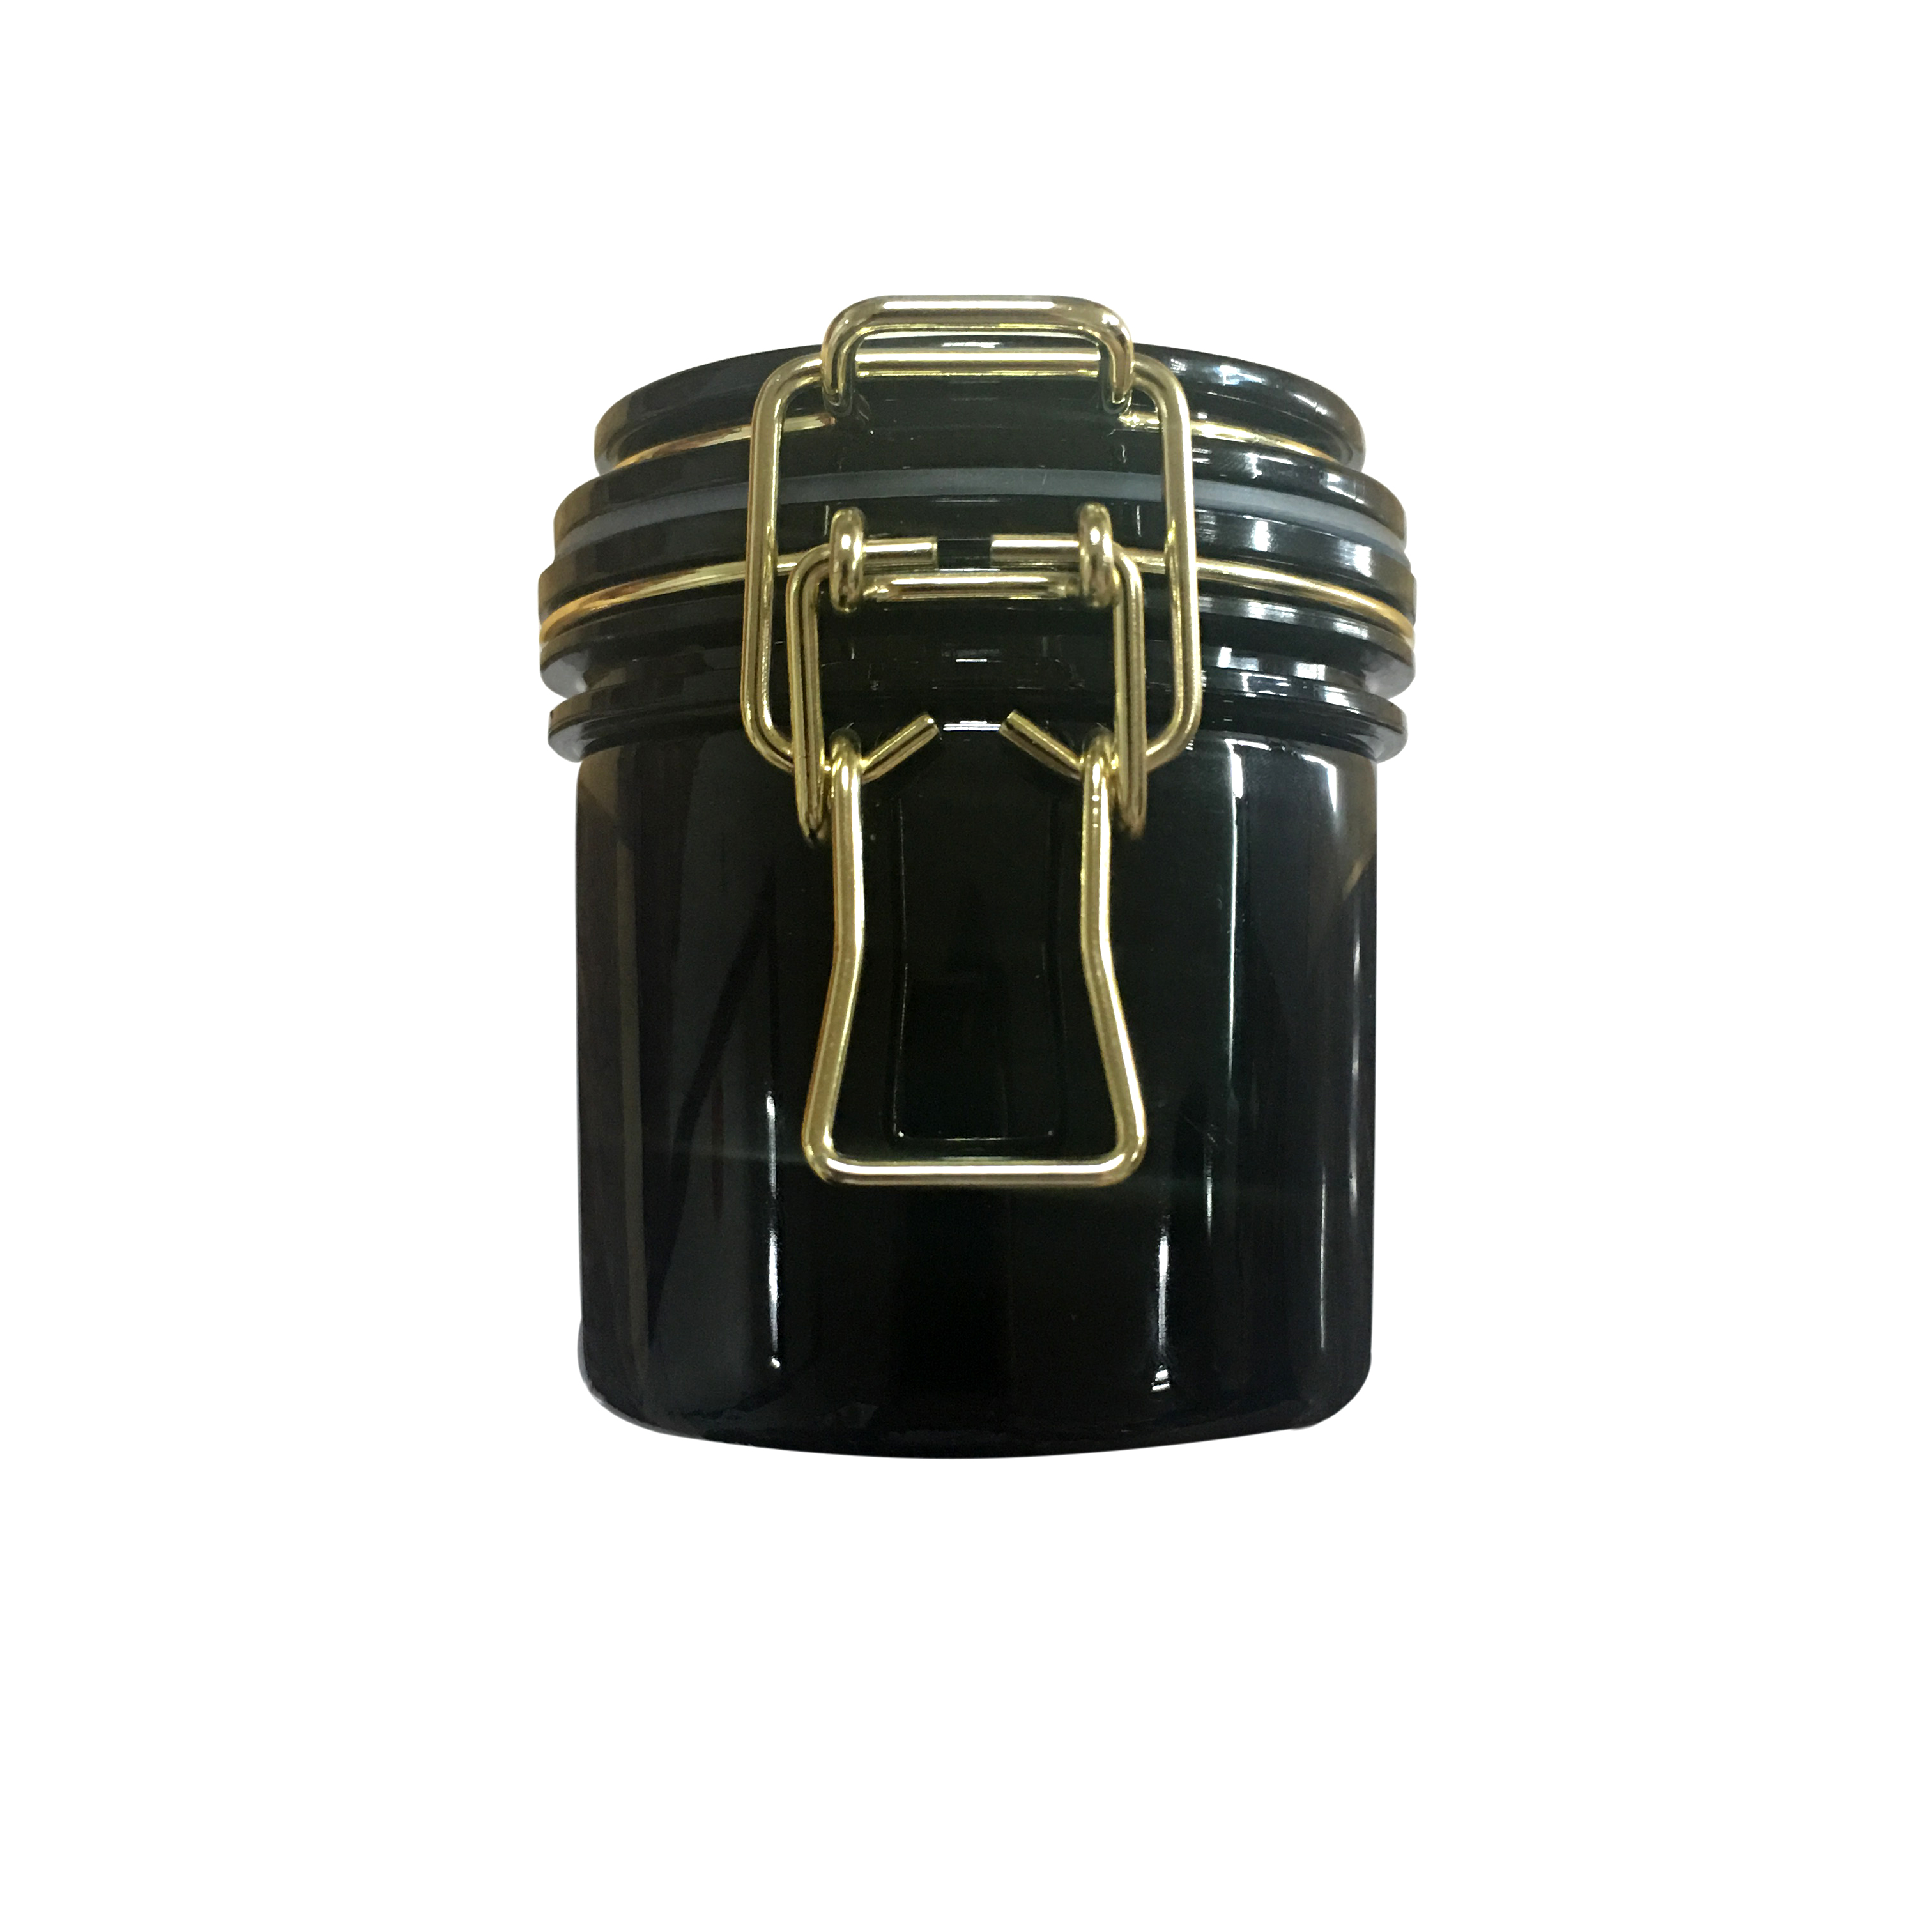 Опарник маски еды черного ЛЮБИМЦА пластиковый косметический консервируя воздухонепроницаемый с фермуаром Glod